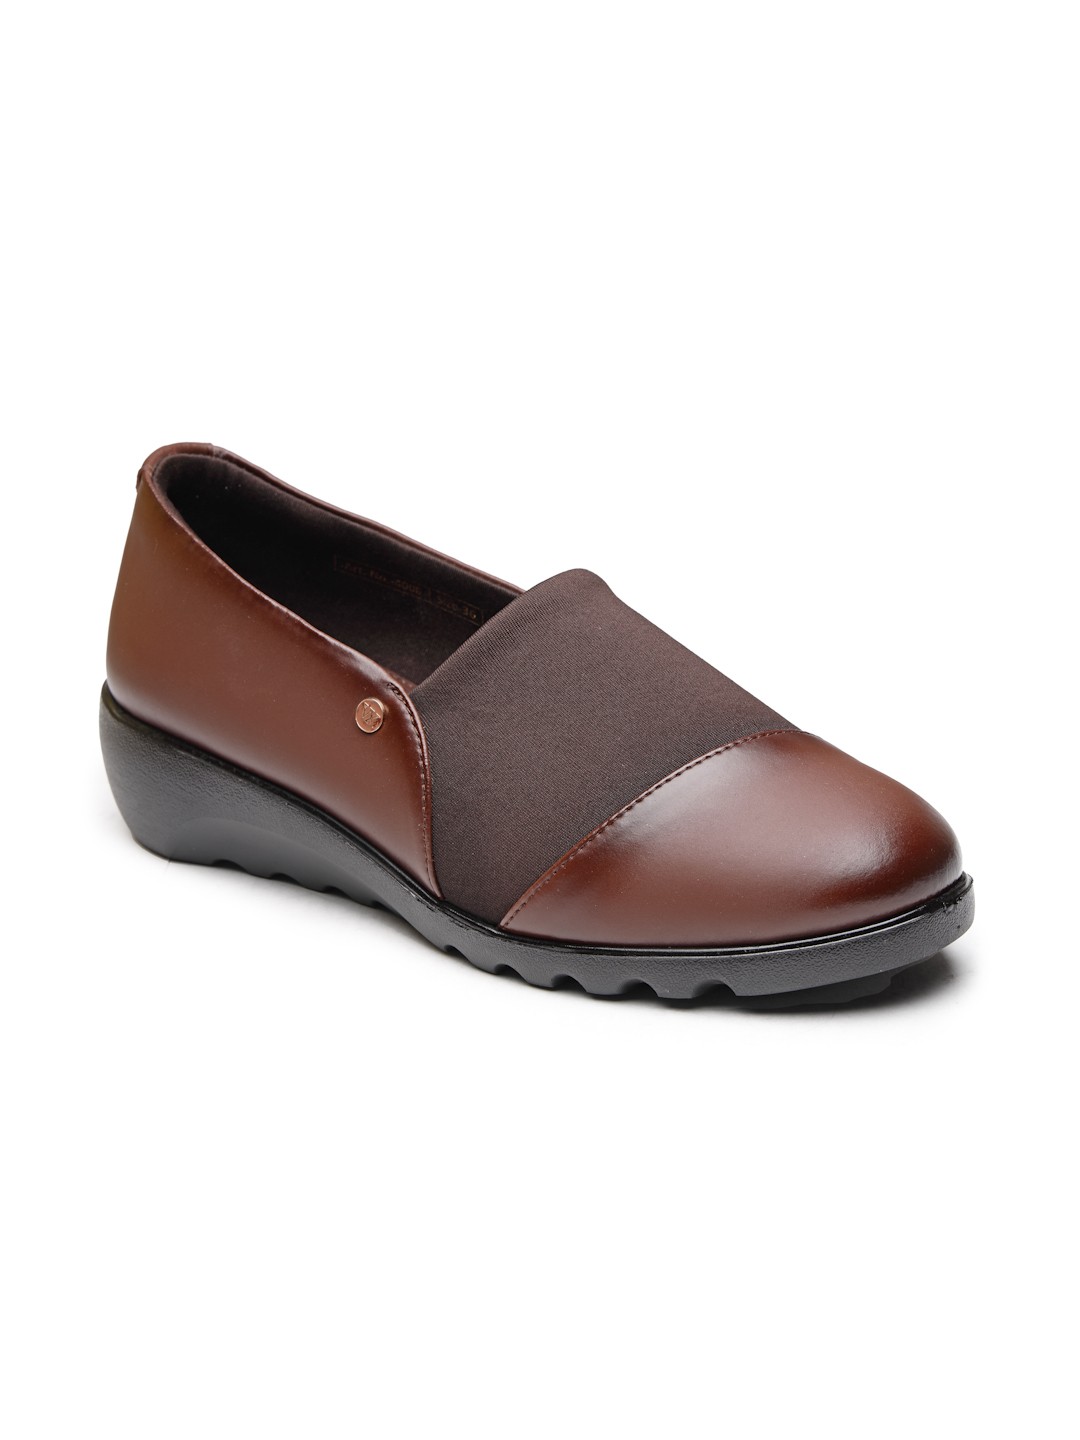 Buy Von Wellx Germany Comfort Women's Brown Casual Shoes Ayla Online in Seemandhra